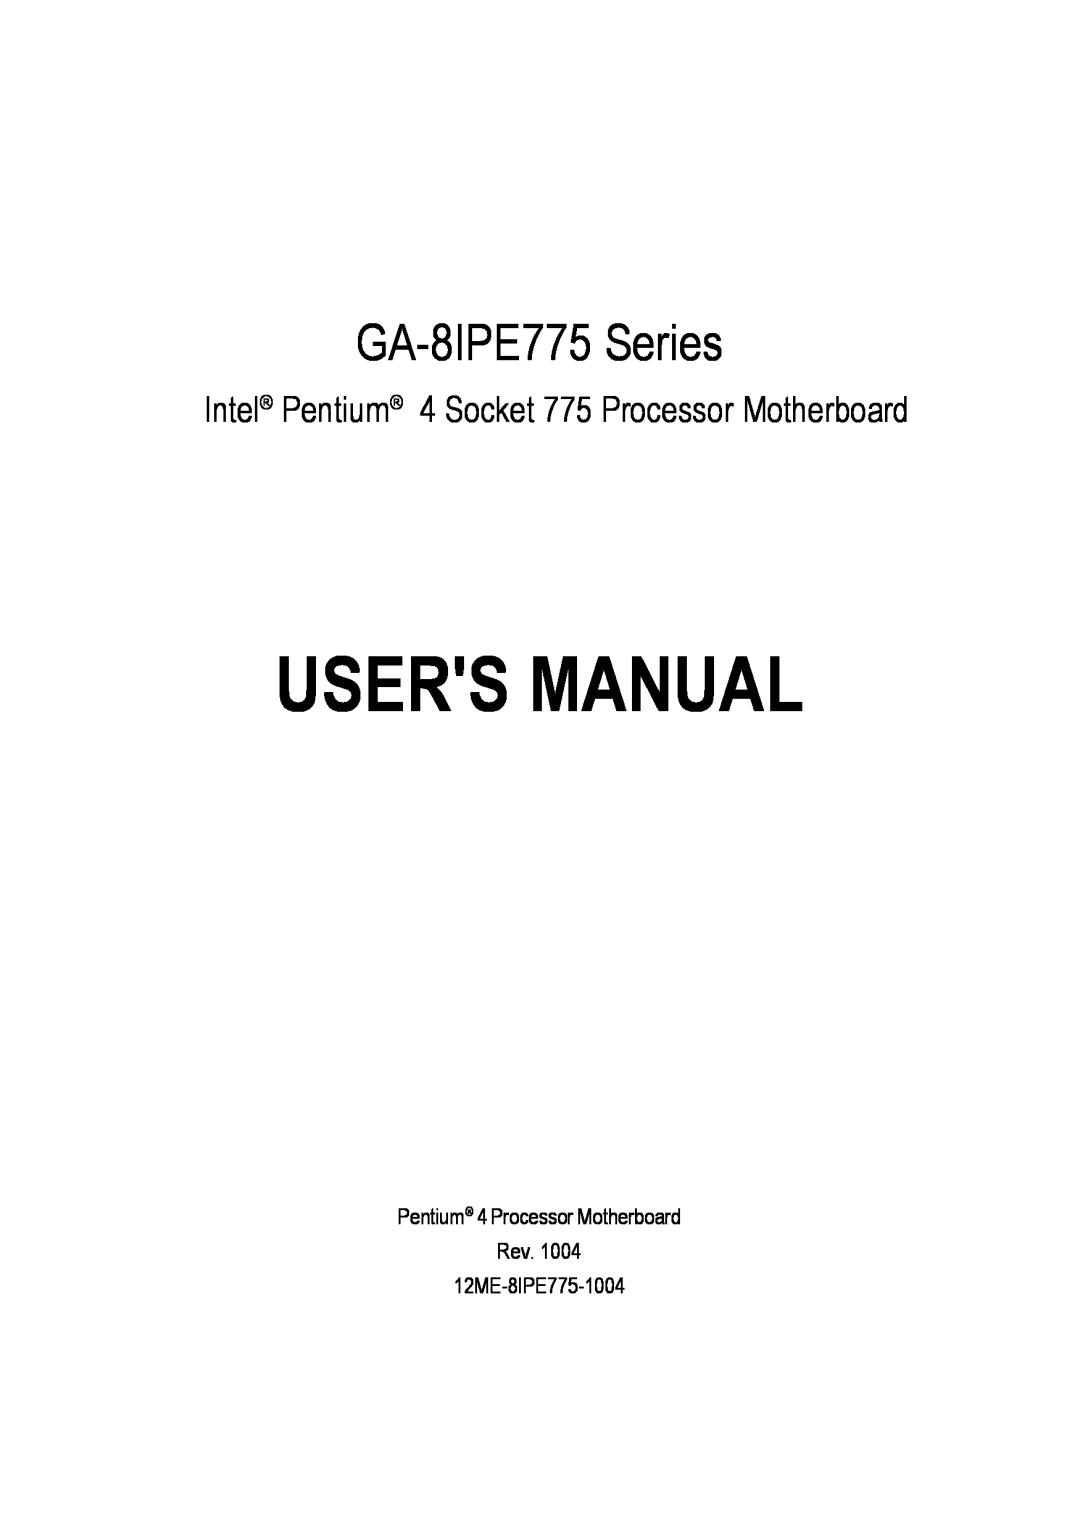 Gigabyte AGP 4X/8X manual Users Manual, GA-8IPE775 Series, Intel Pentium 4 Socket 775 Processor Motherboard 